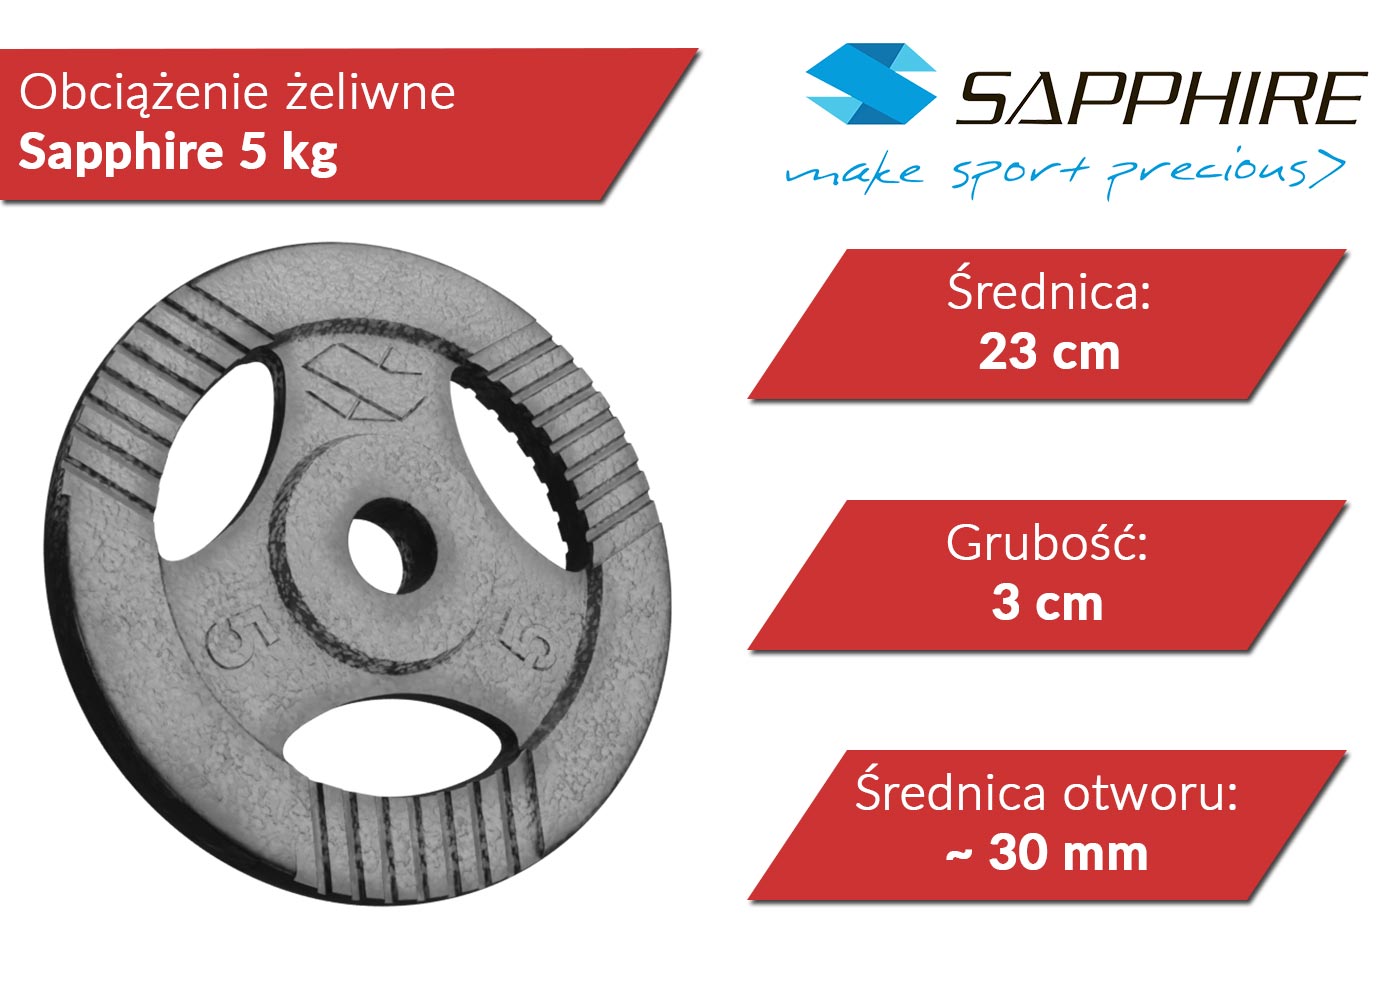 Obciążenie żeliwne Sapphire 5 kg